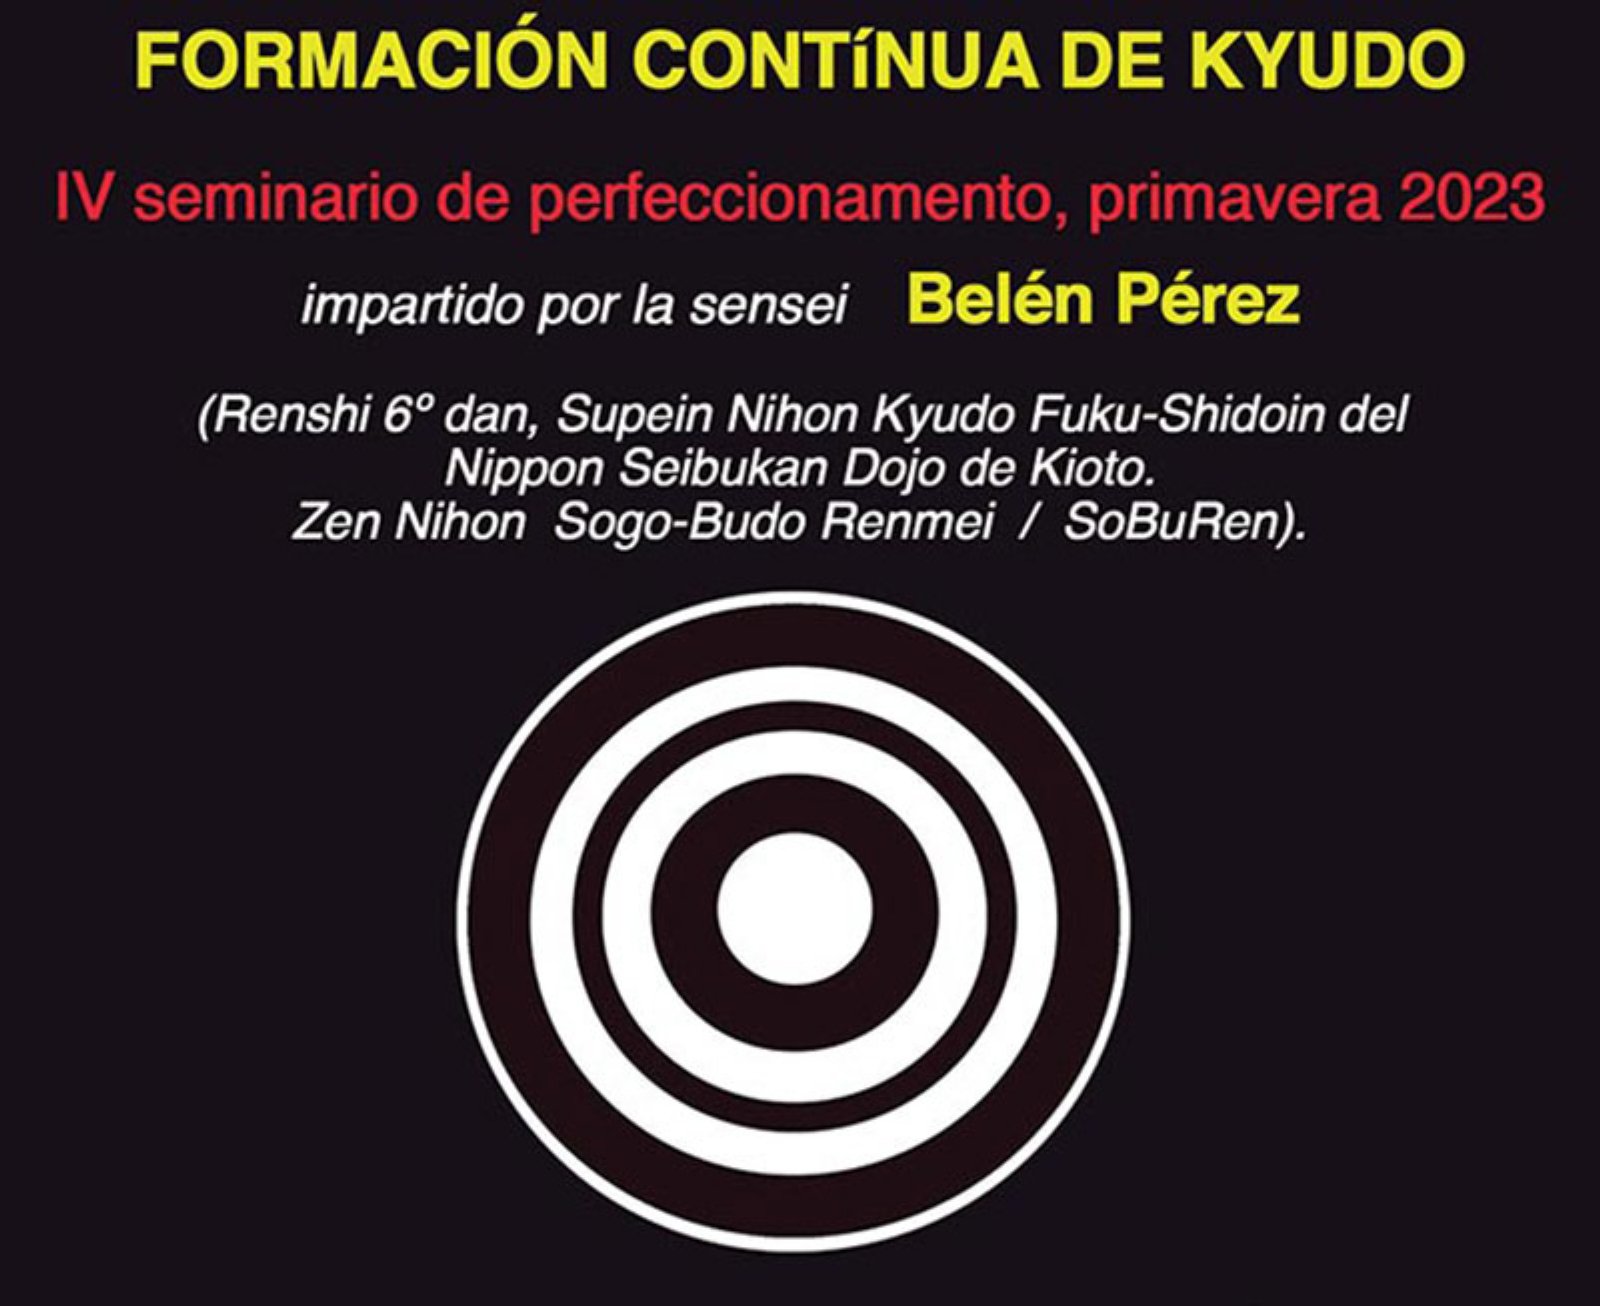 IV Seminario de perfeccionamiewnto de Kyudo en Barcelona